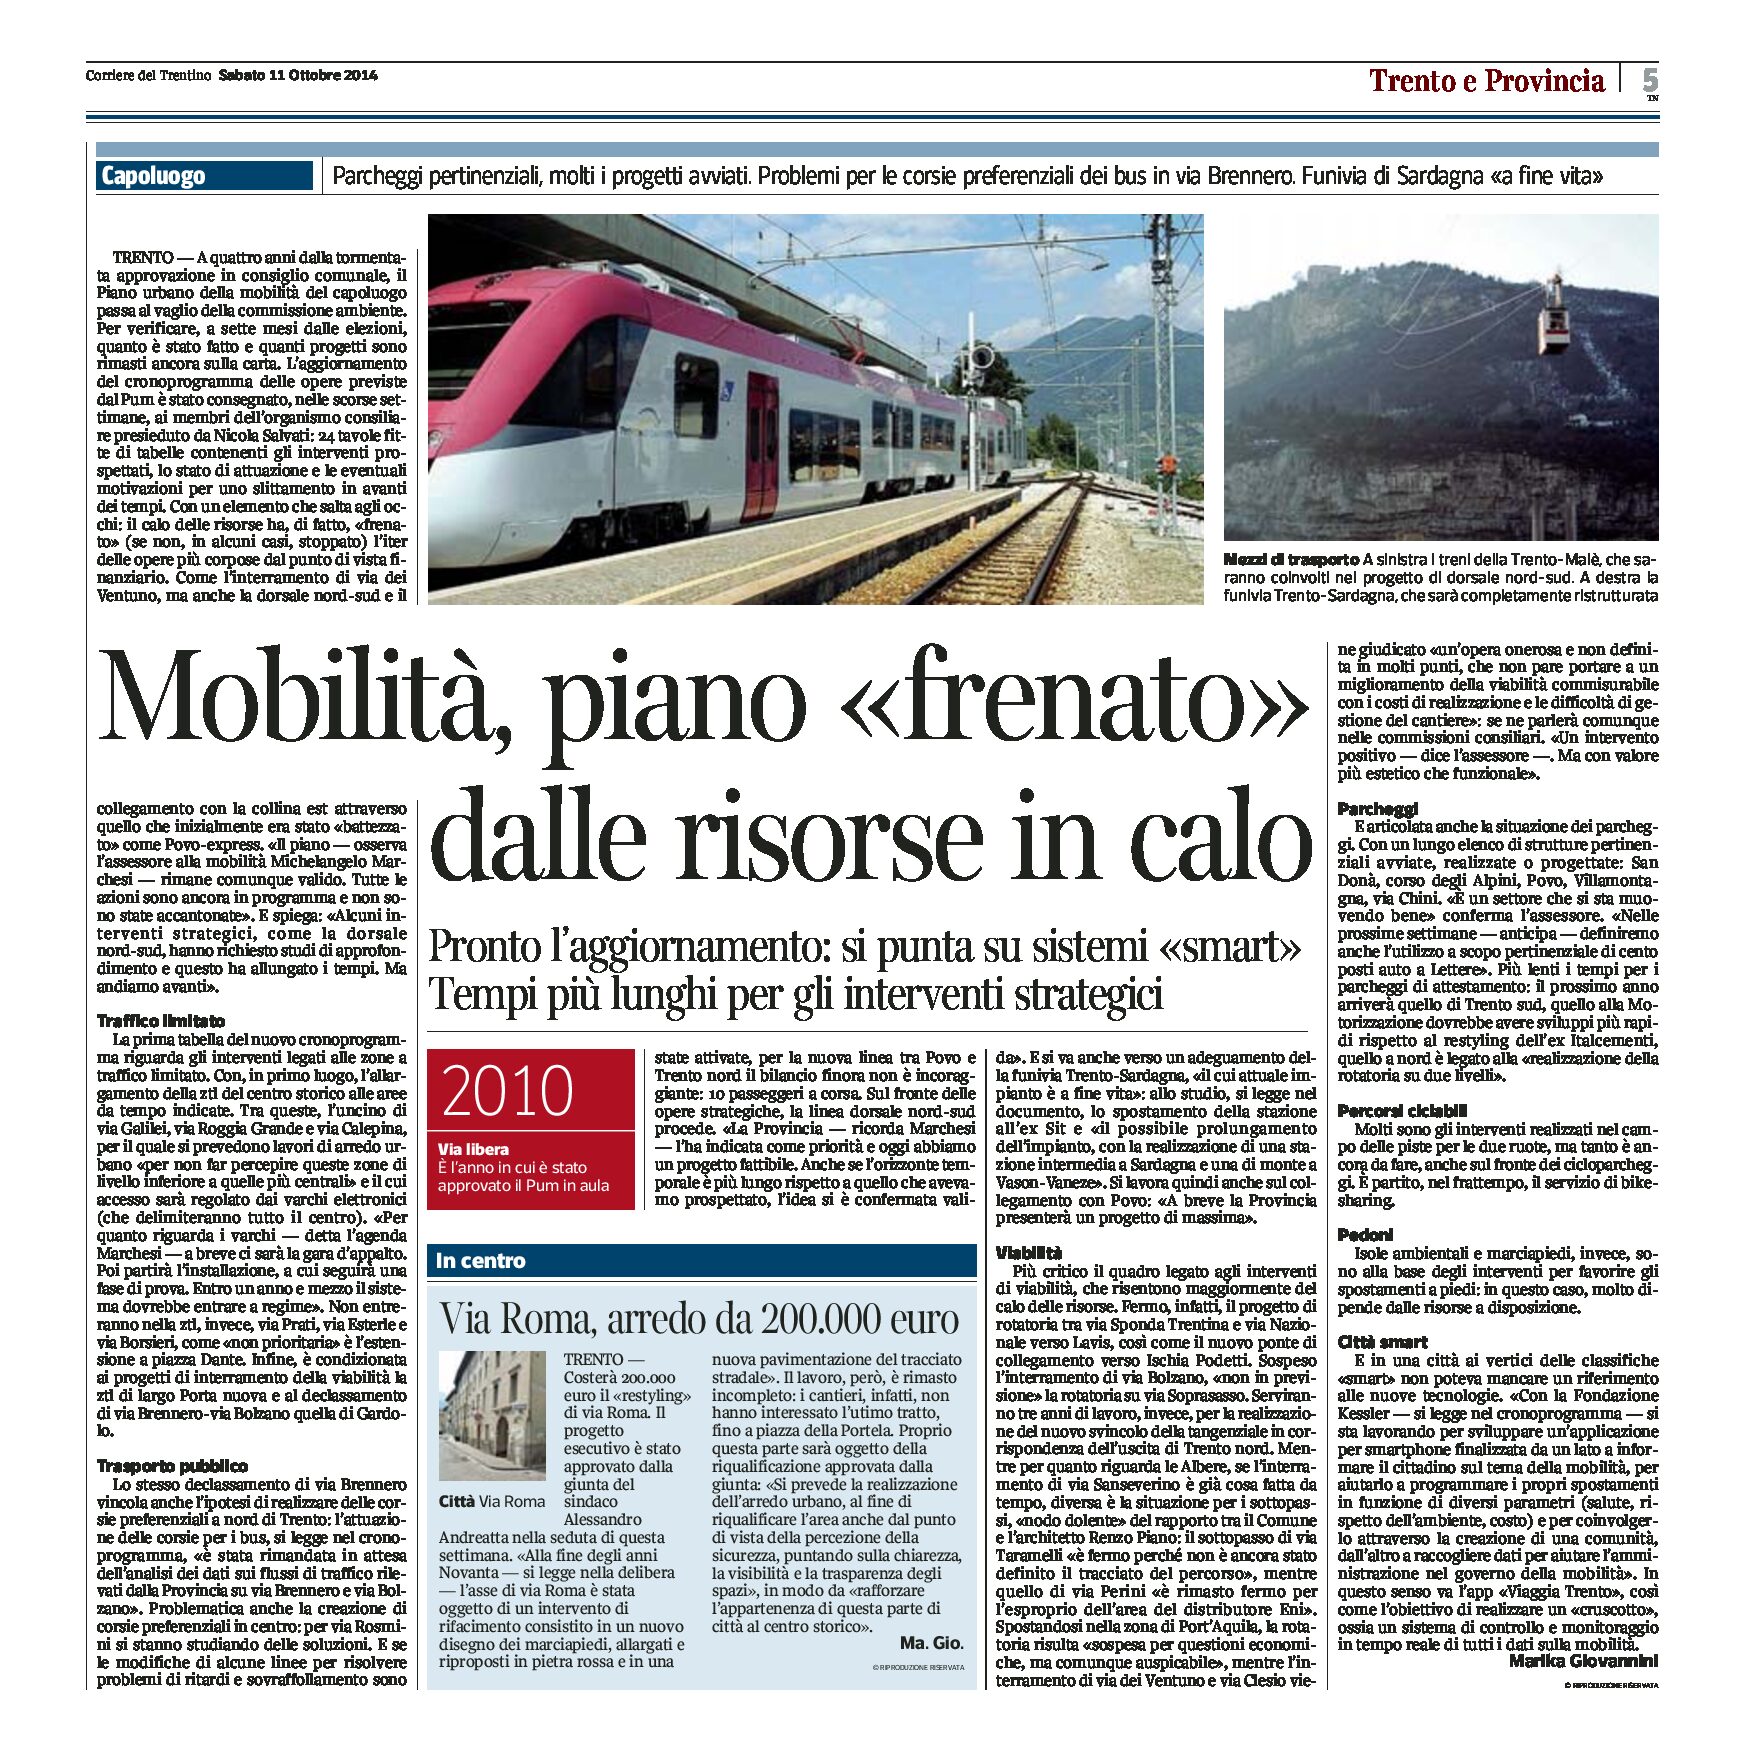 Trento: il Piano urbano della mobilità frenato dal calo di risorse. Si punta su sistemi “smart”